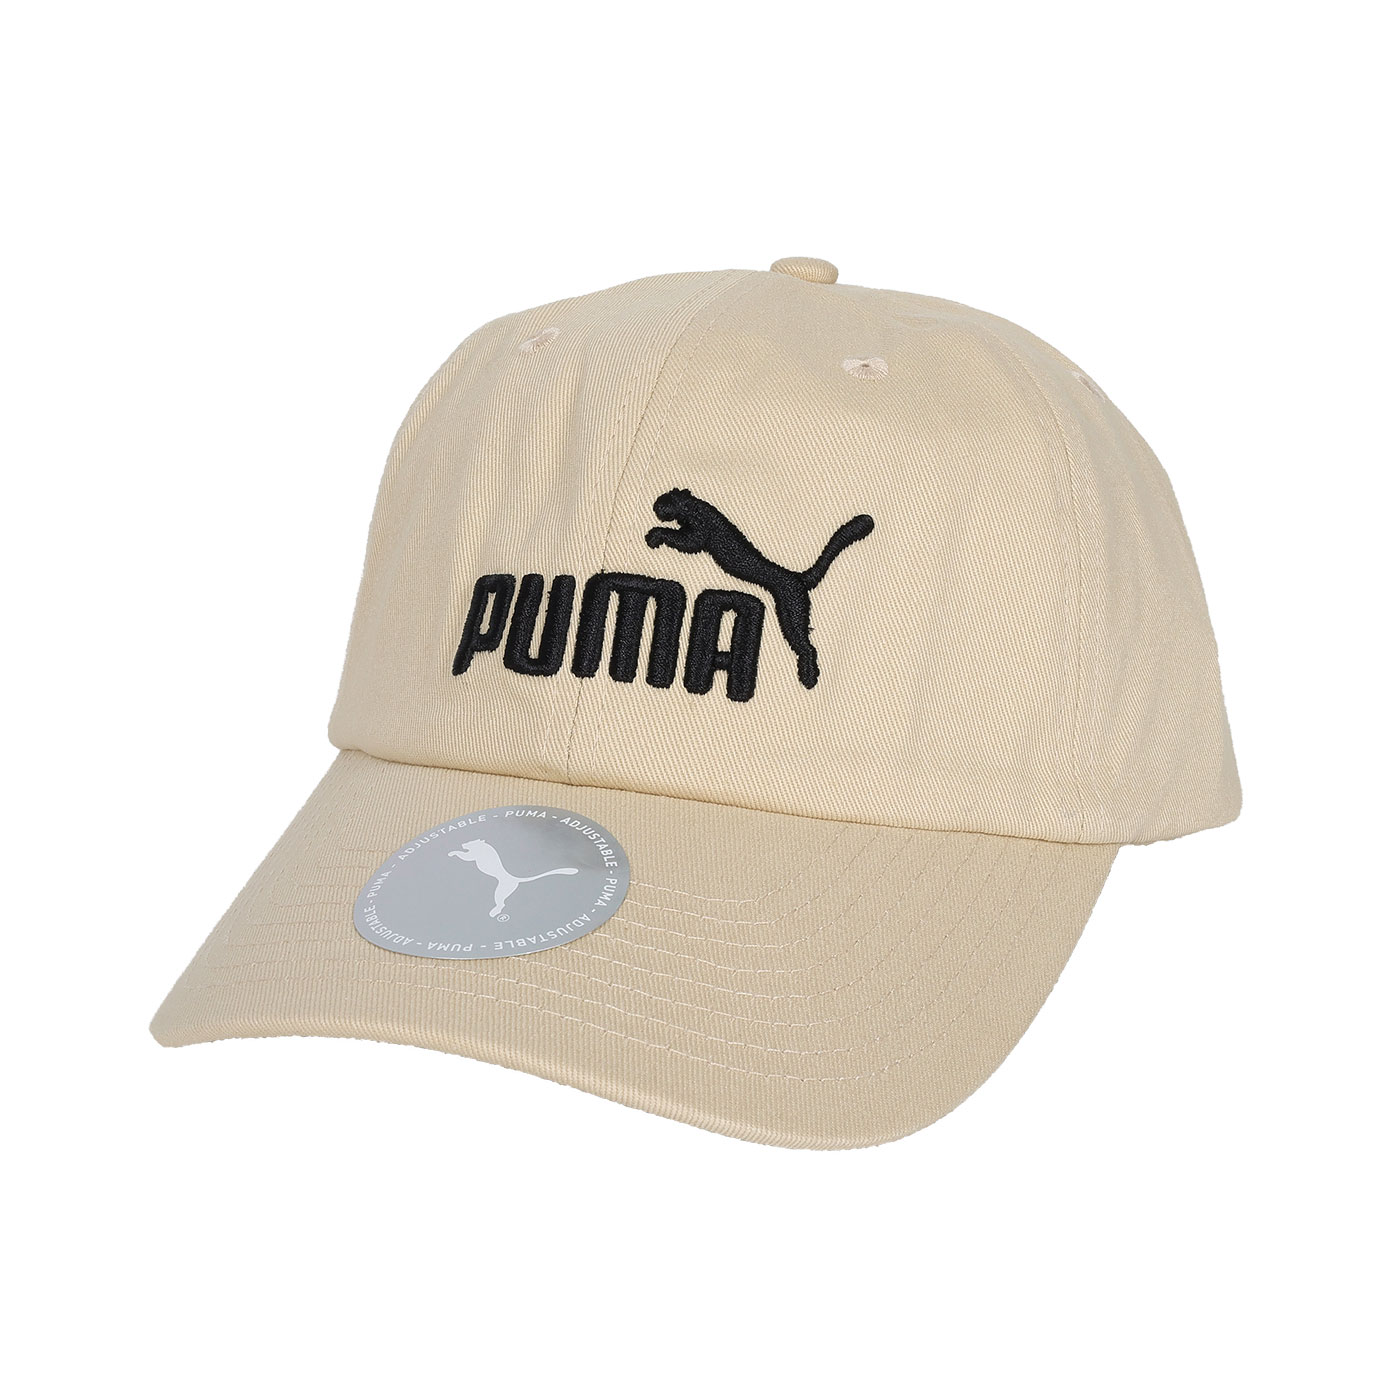 PUMA 基本系列 NO.1 棒球帽  02435702 - 奶茶黑